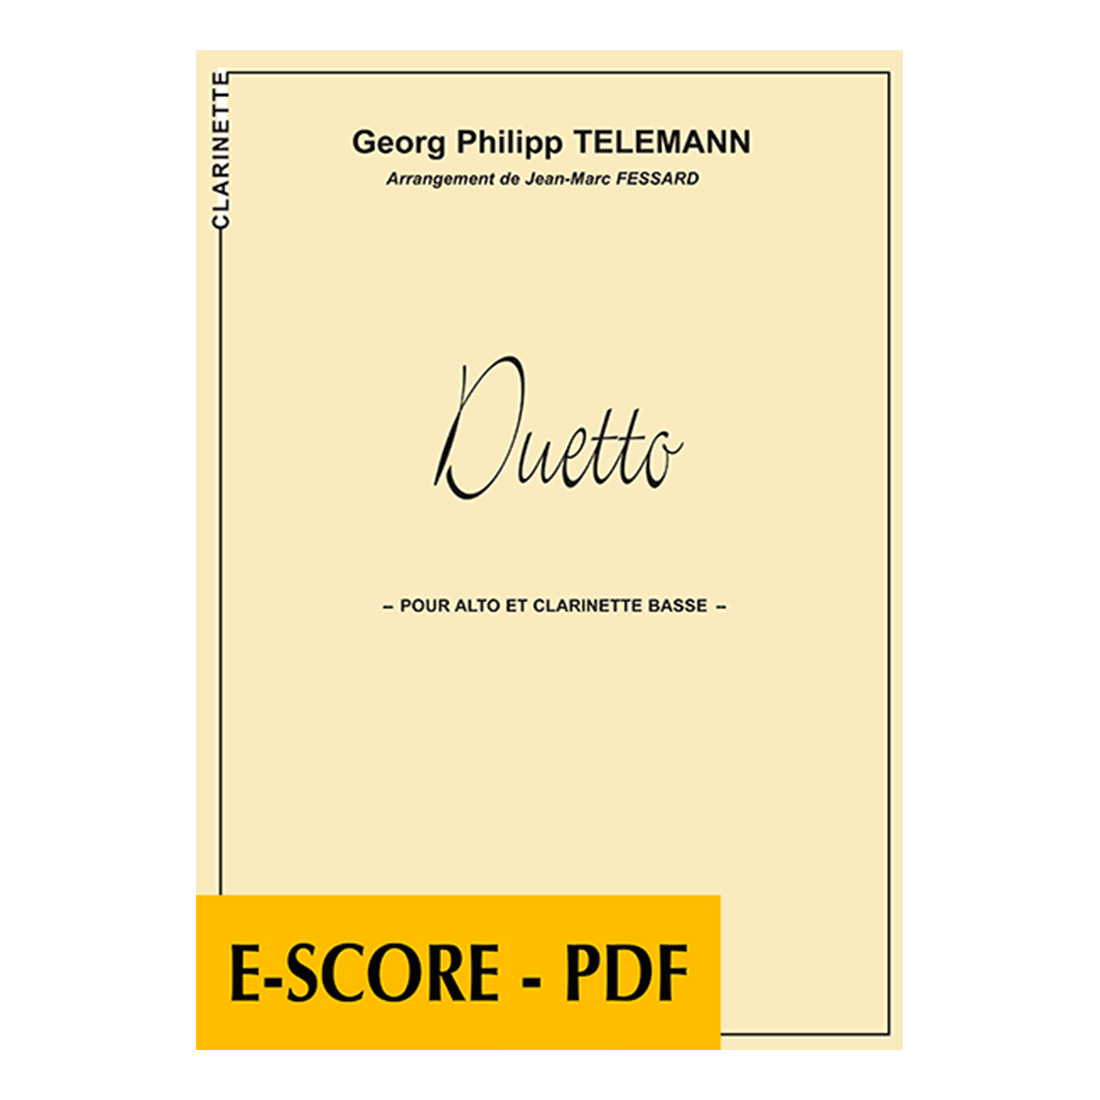 Duetto pour alto et clarinette basse - E-score PDF